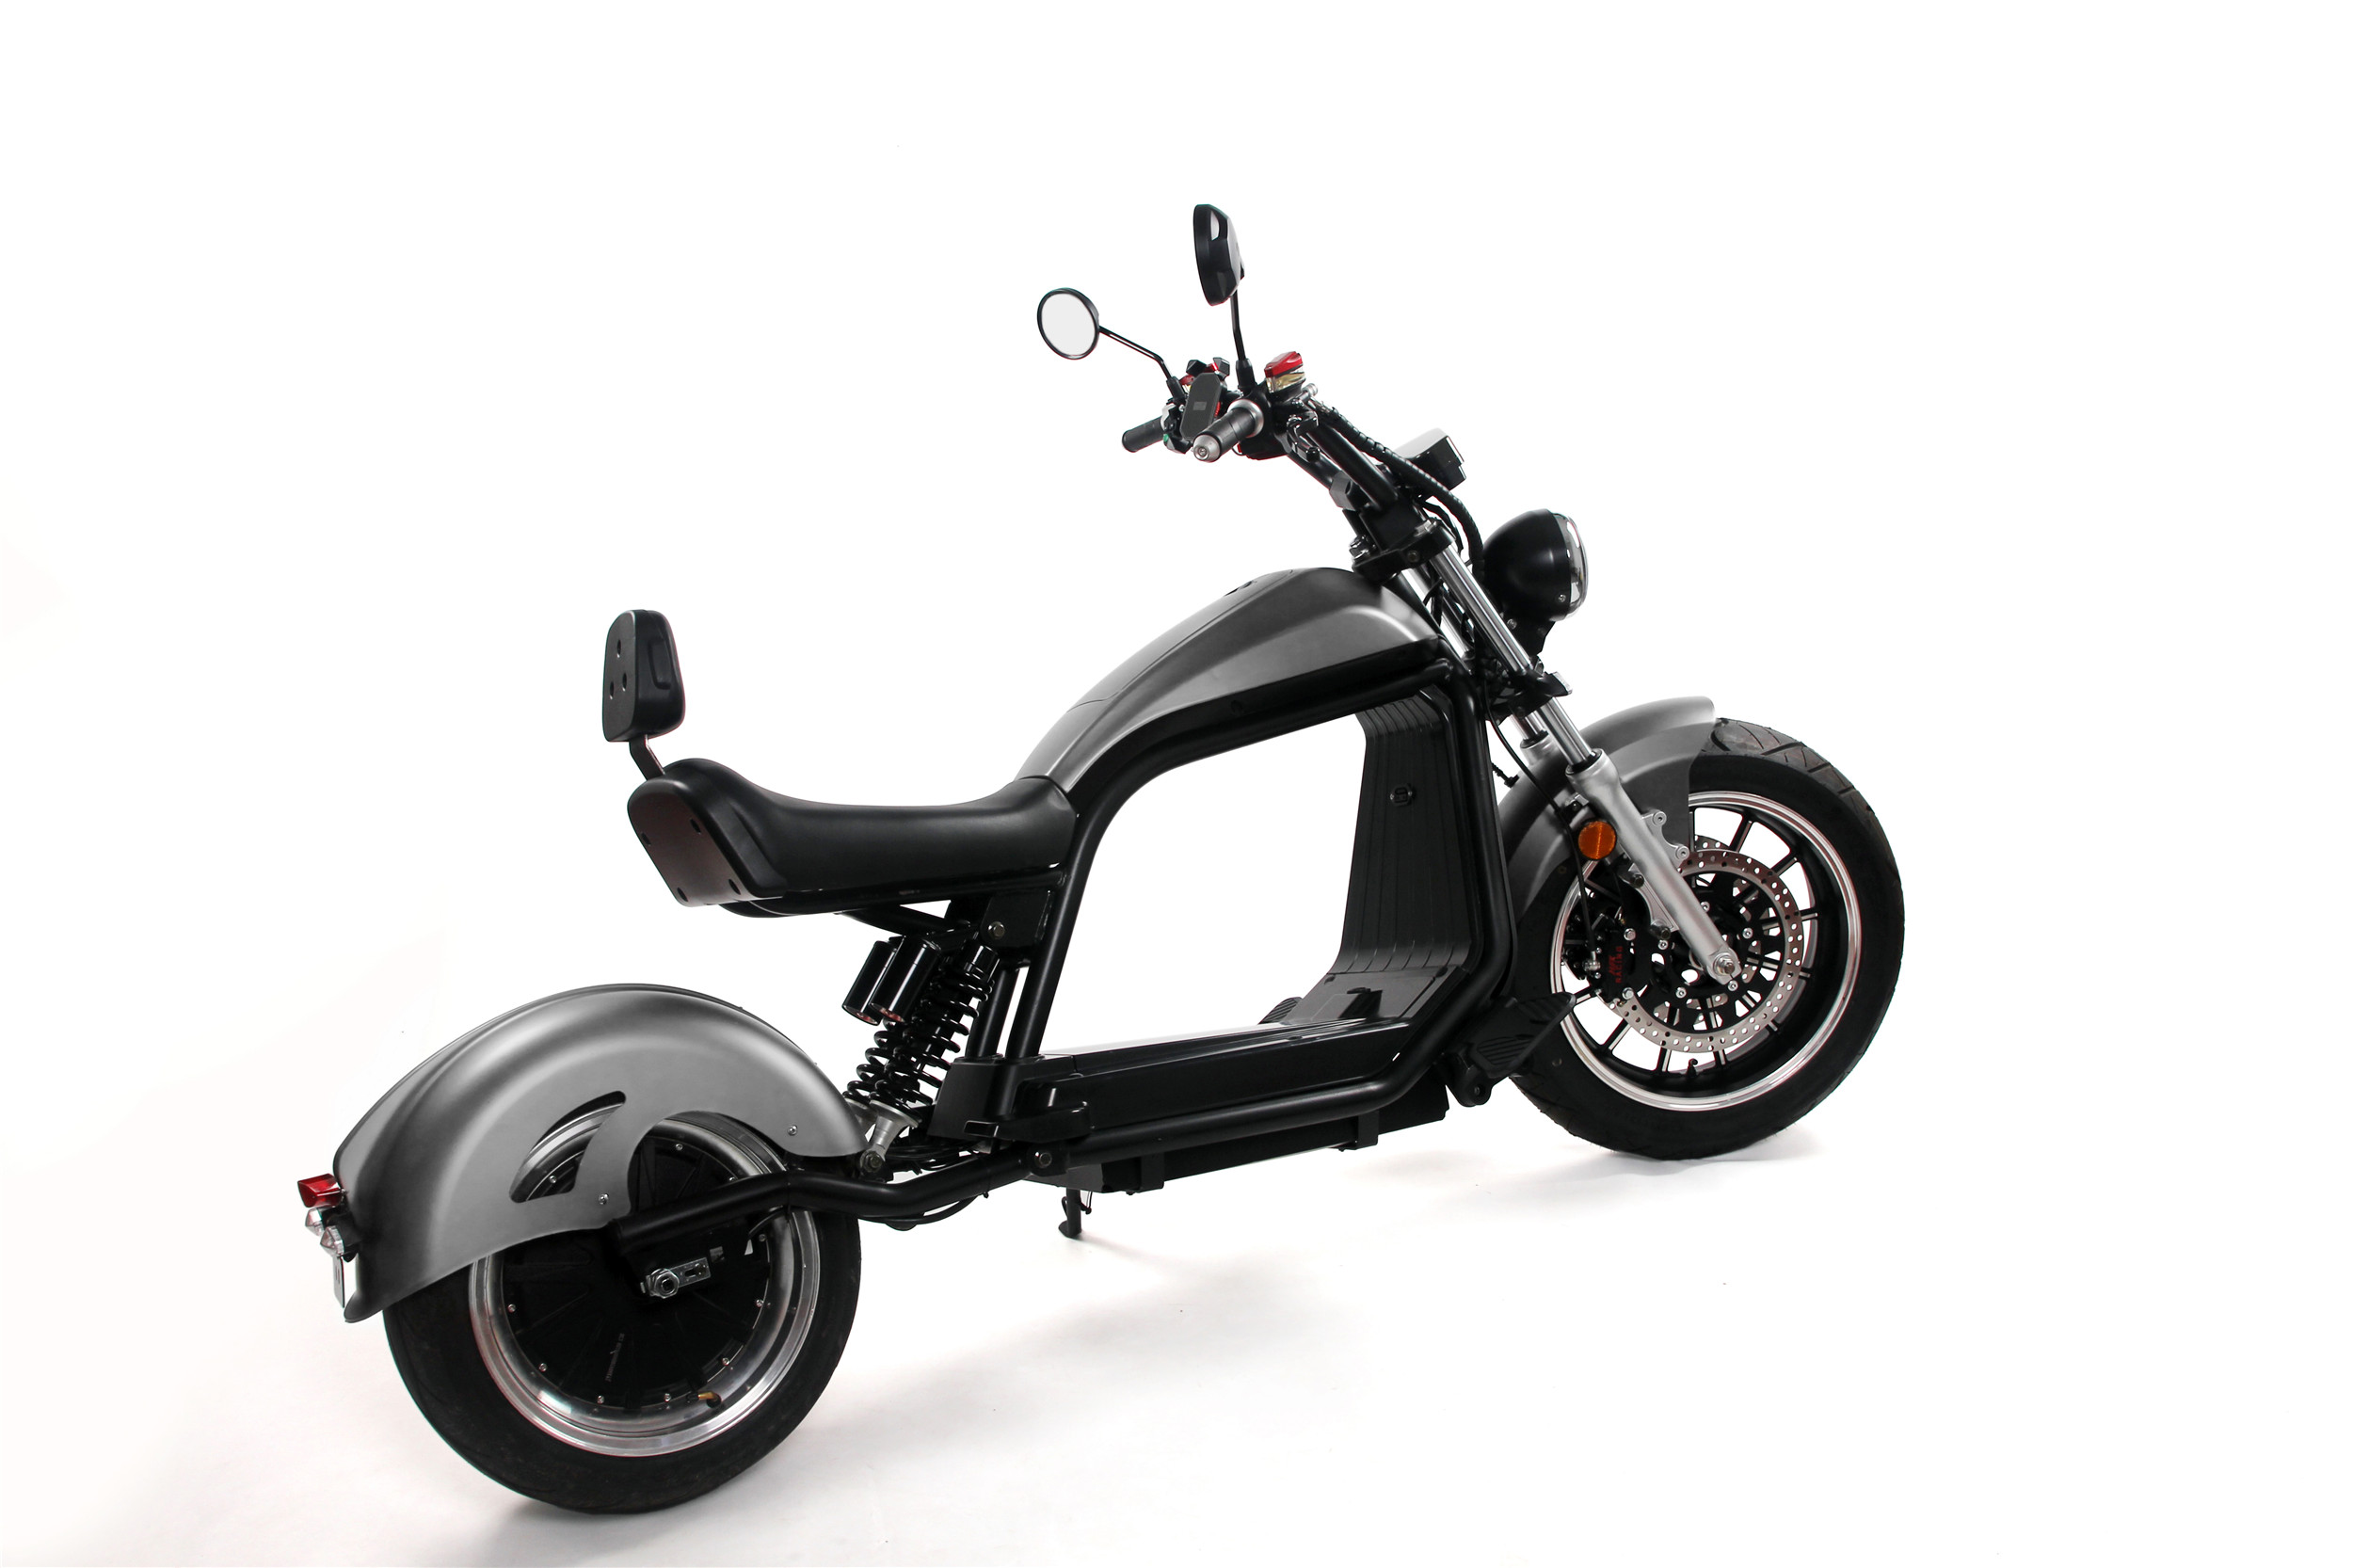 Ce scooter électrique aux allures de chopper sera-t-il disponible